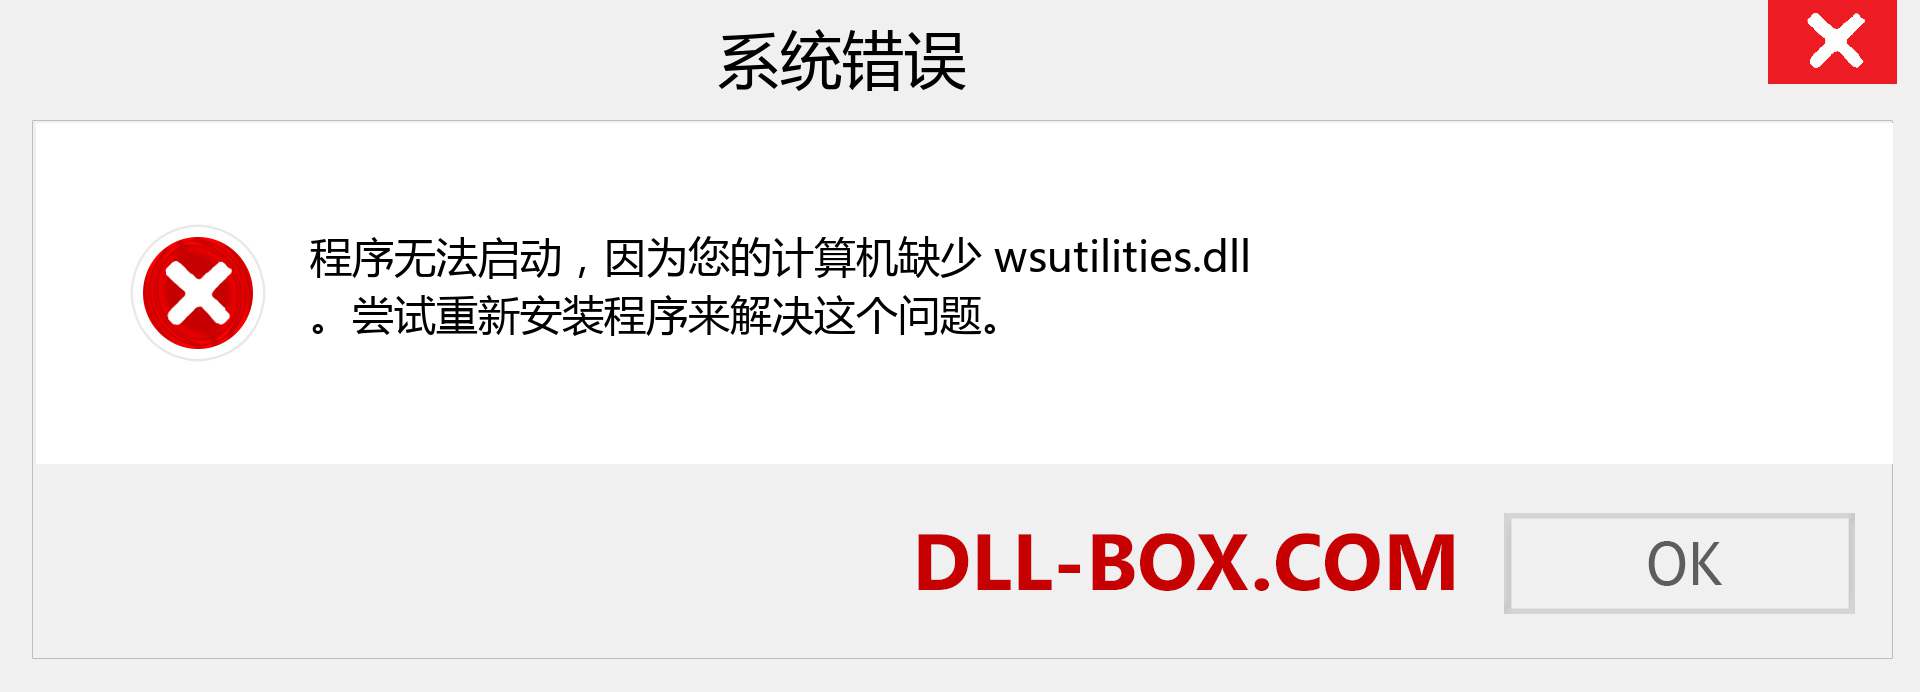 wsutilities.dll 文件丢失？。 适用于 Windows 7、8、10 的下载 - 修复 Windows、照片、图像上的 wsutilities dll 丢失错误